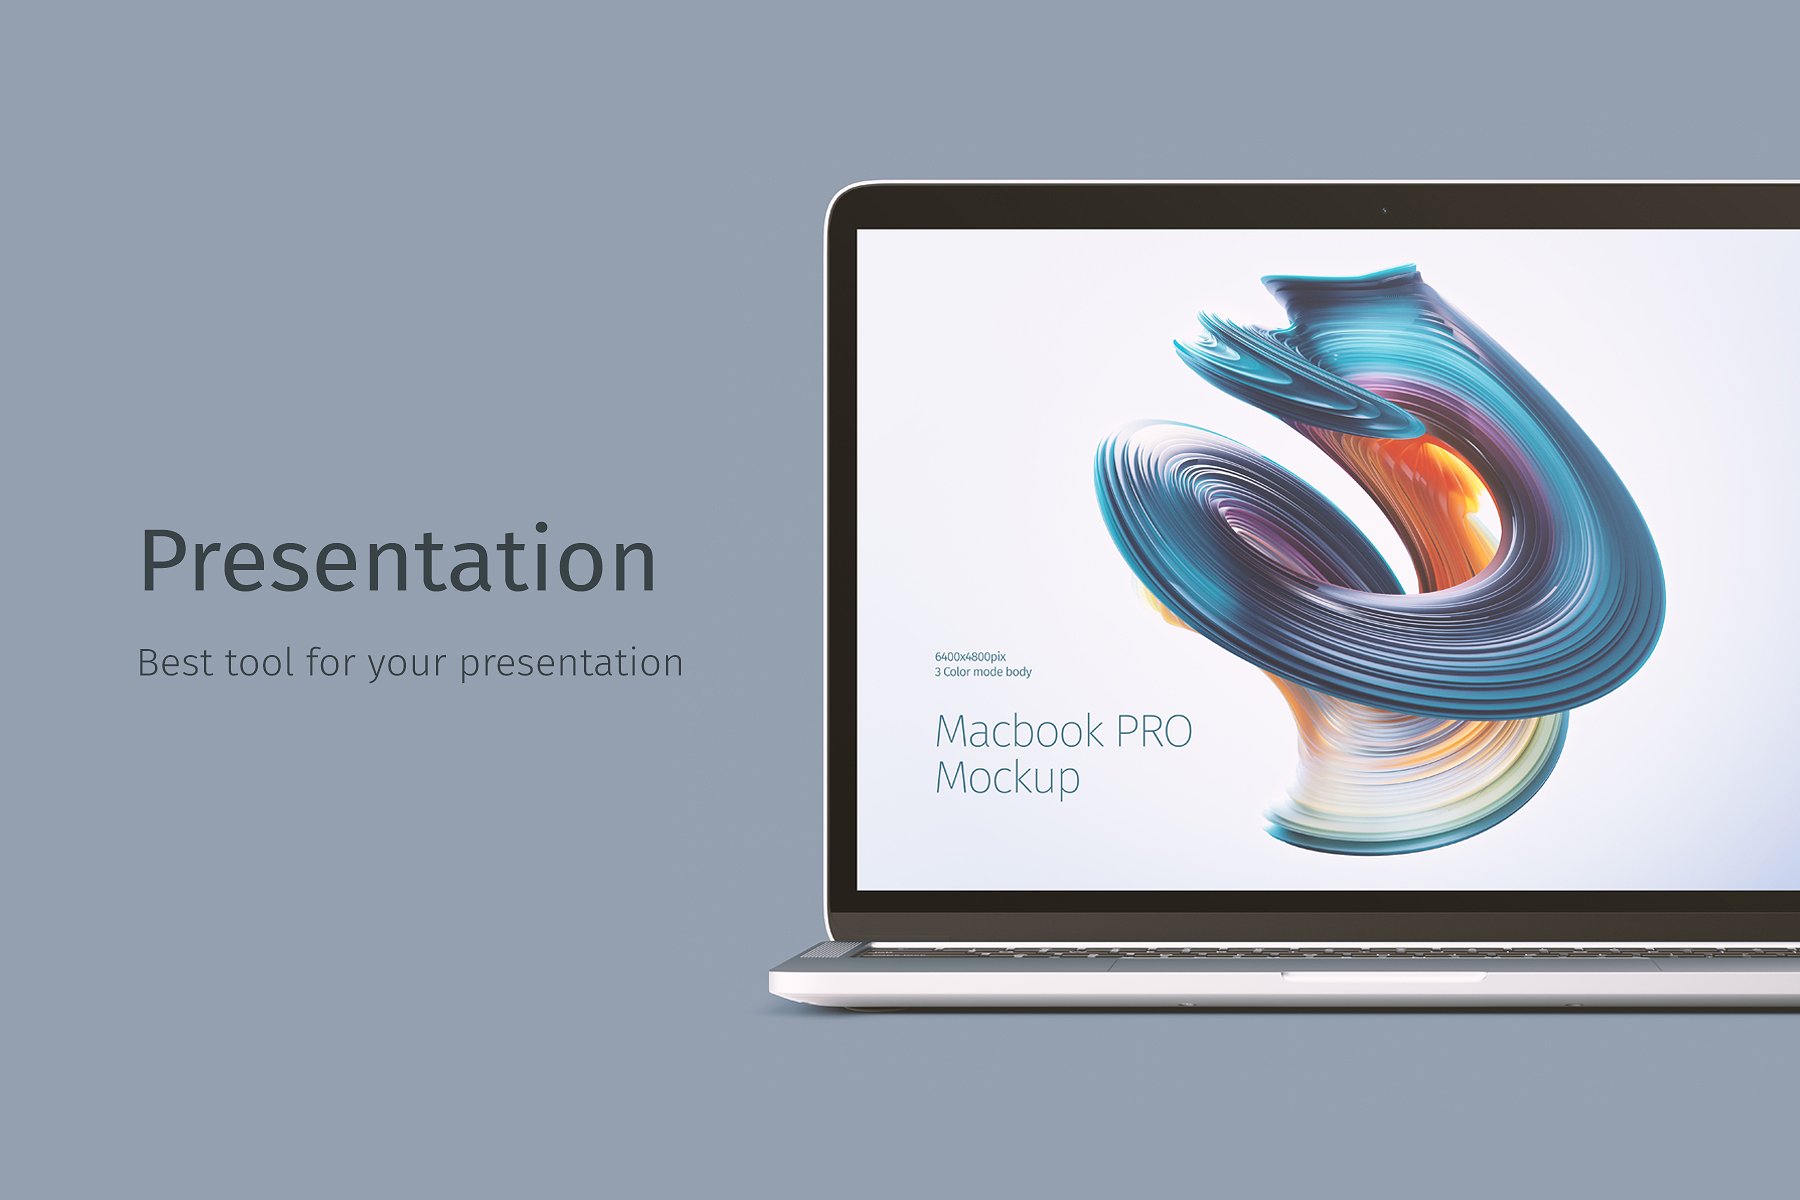 精美的MacBook Pro的创意样机 Macbook Pro Creative Mockup插图3